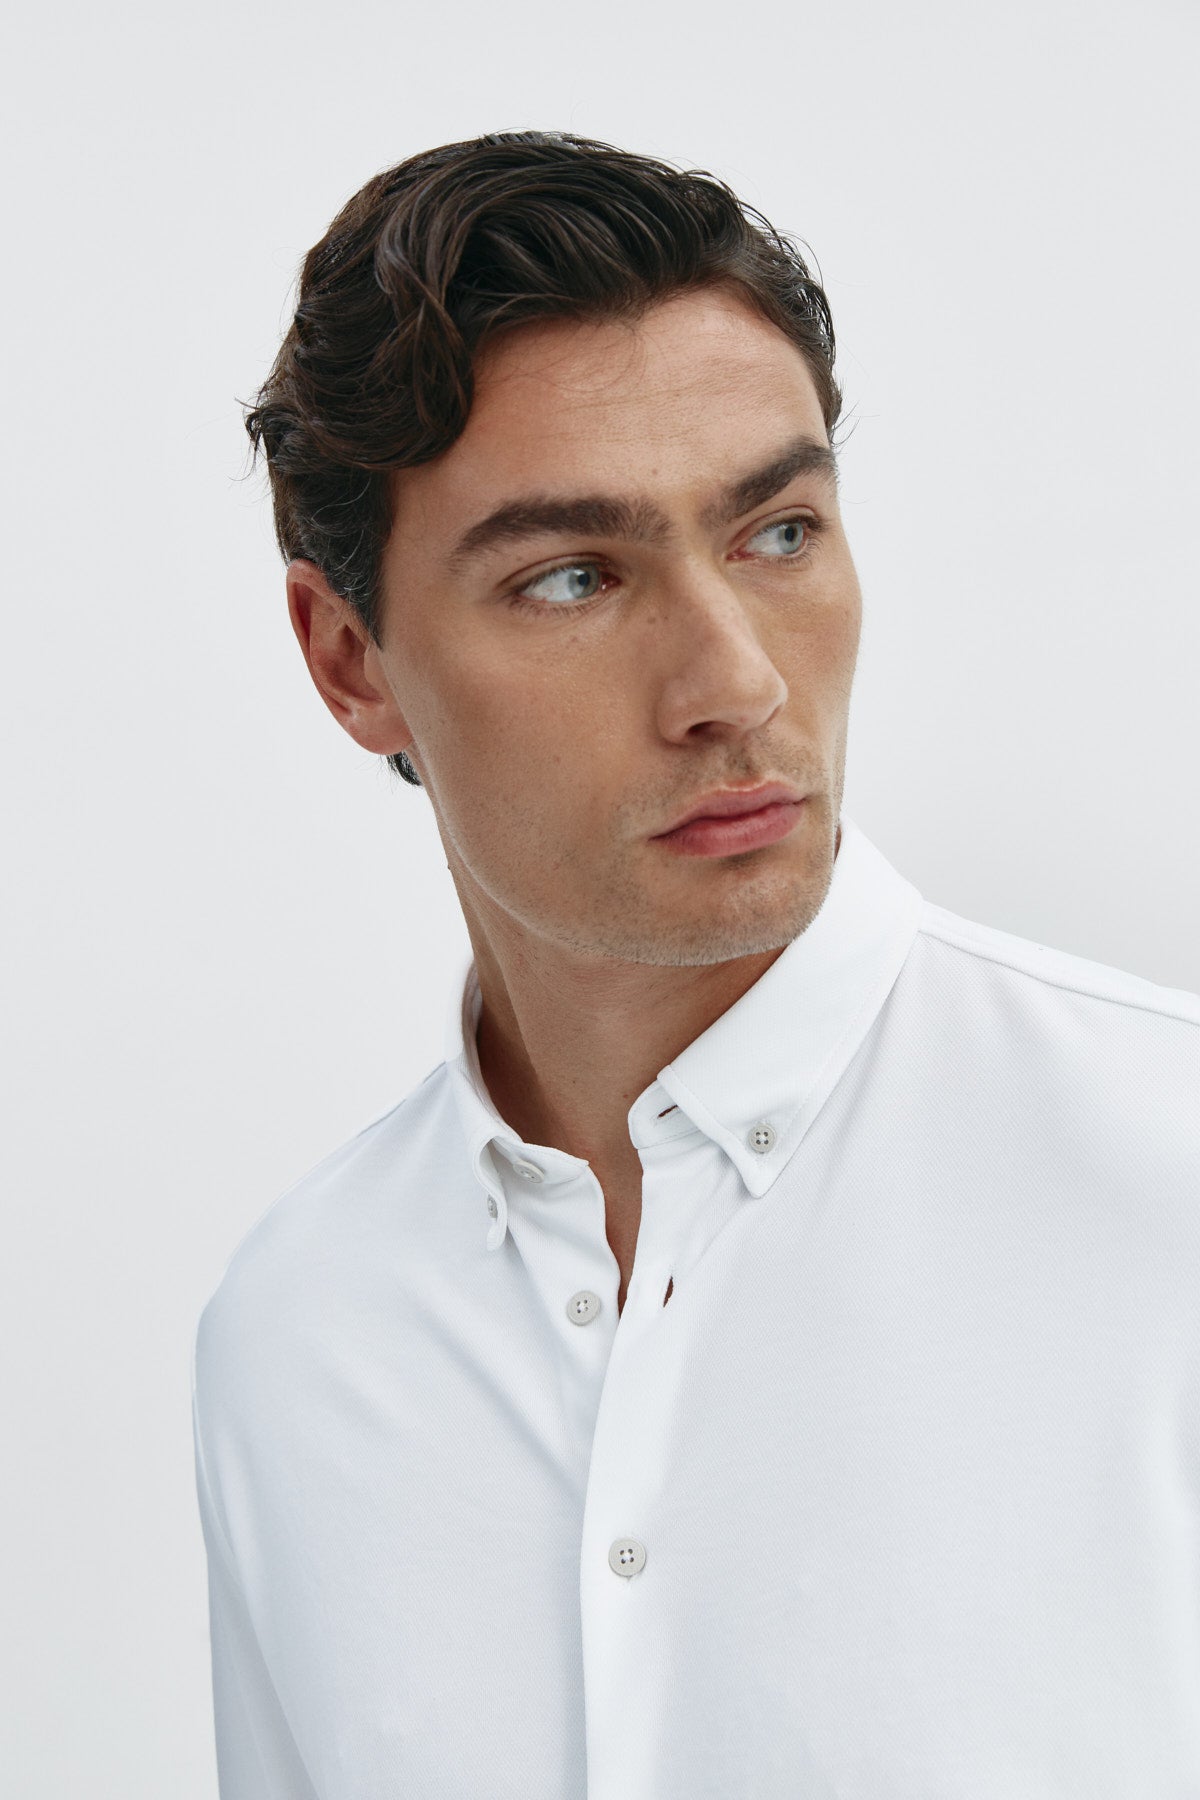 Camisa casual blanca para hombre sin arrugas ni manchas. Manga larga, antiarrugas y antimanchas. Foto retrato